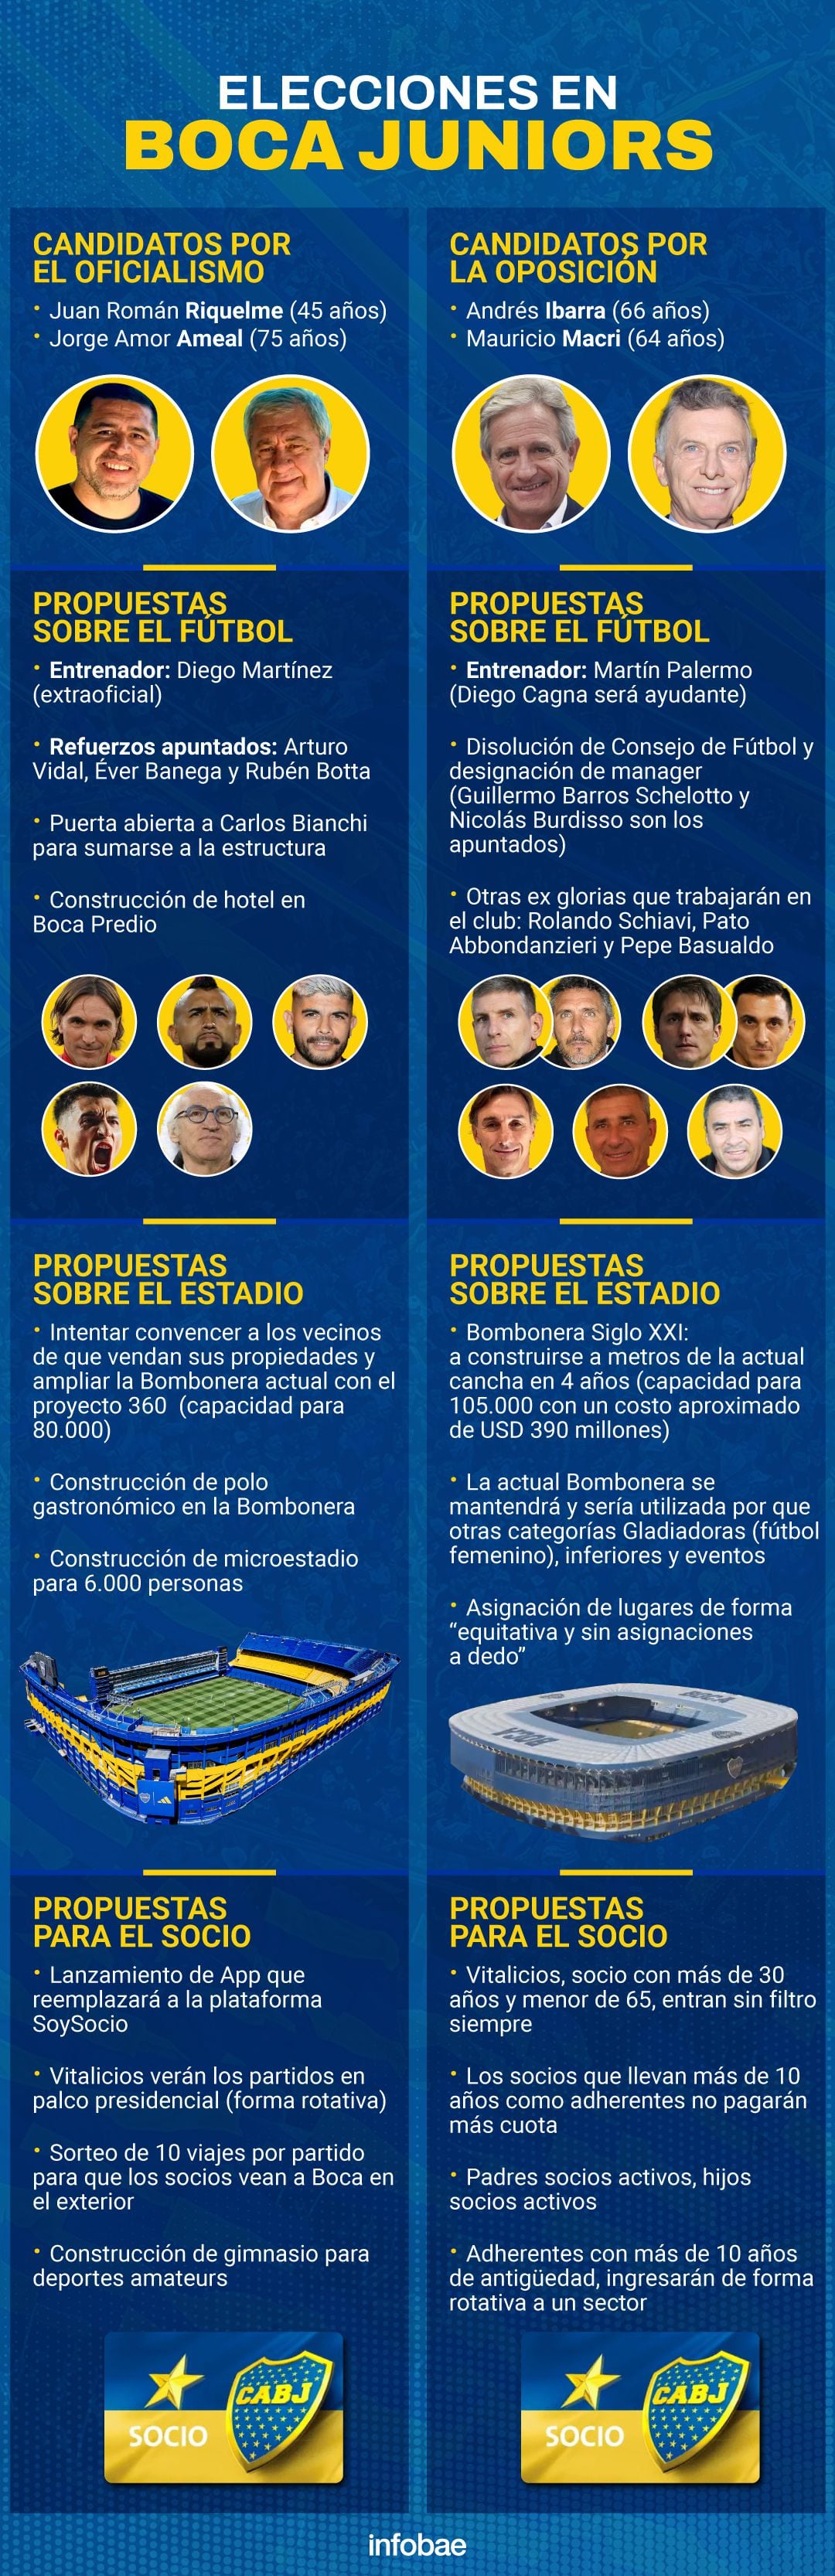 Las principales propuestas de las dos listas en Boca Juniors